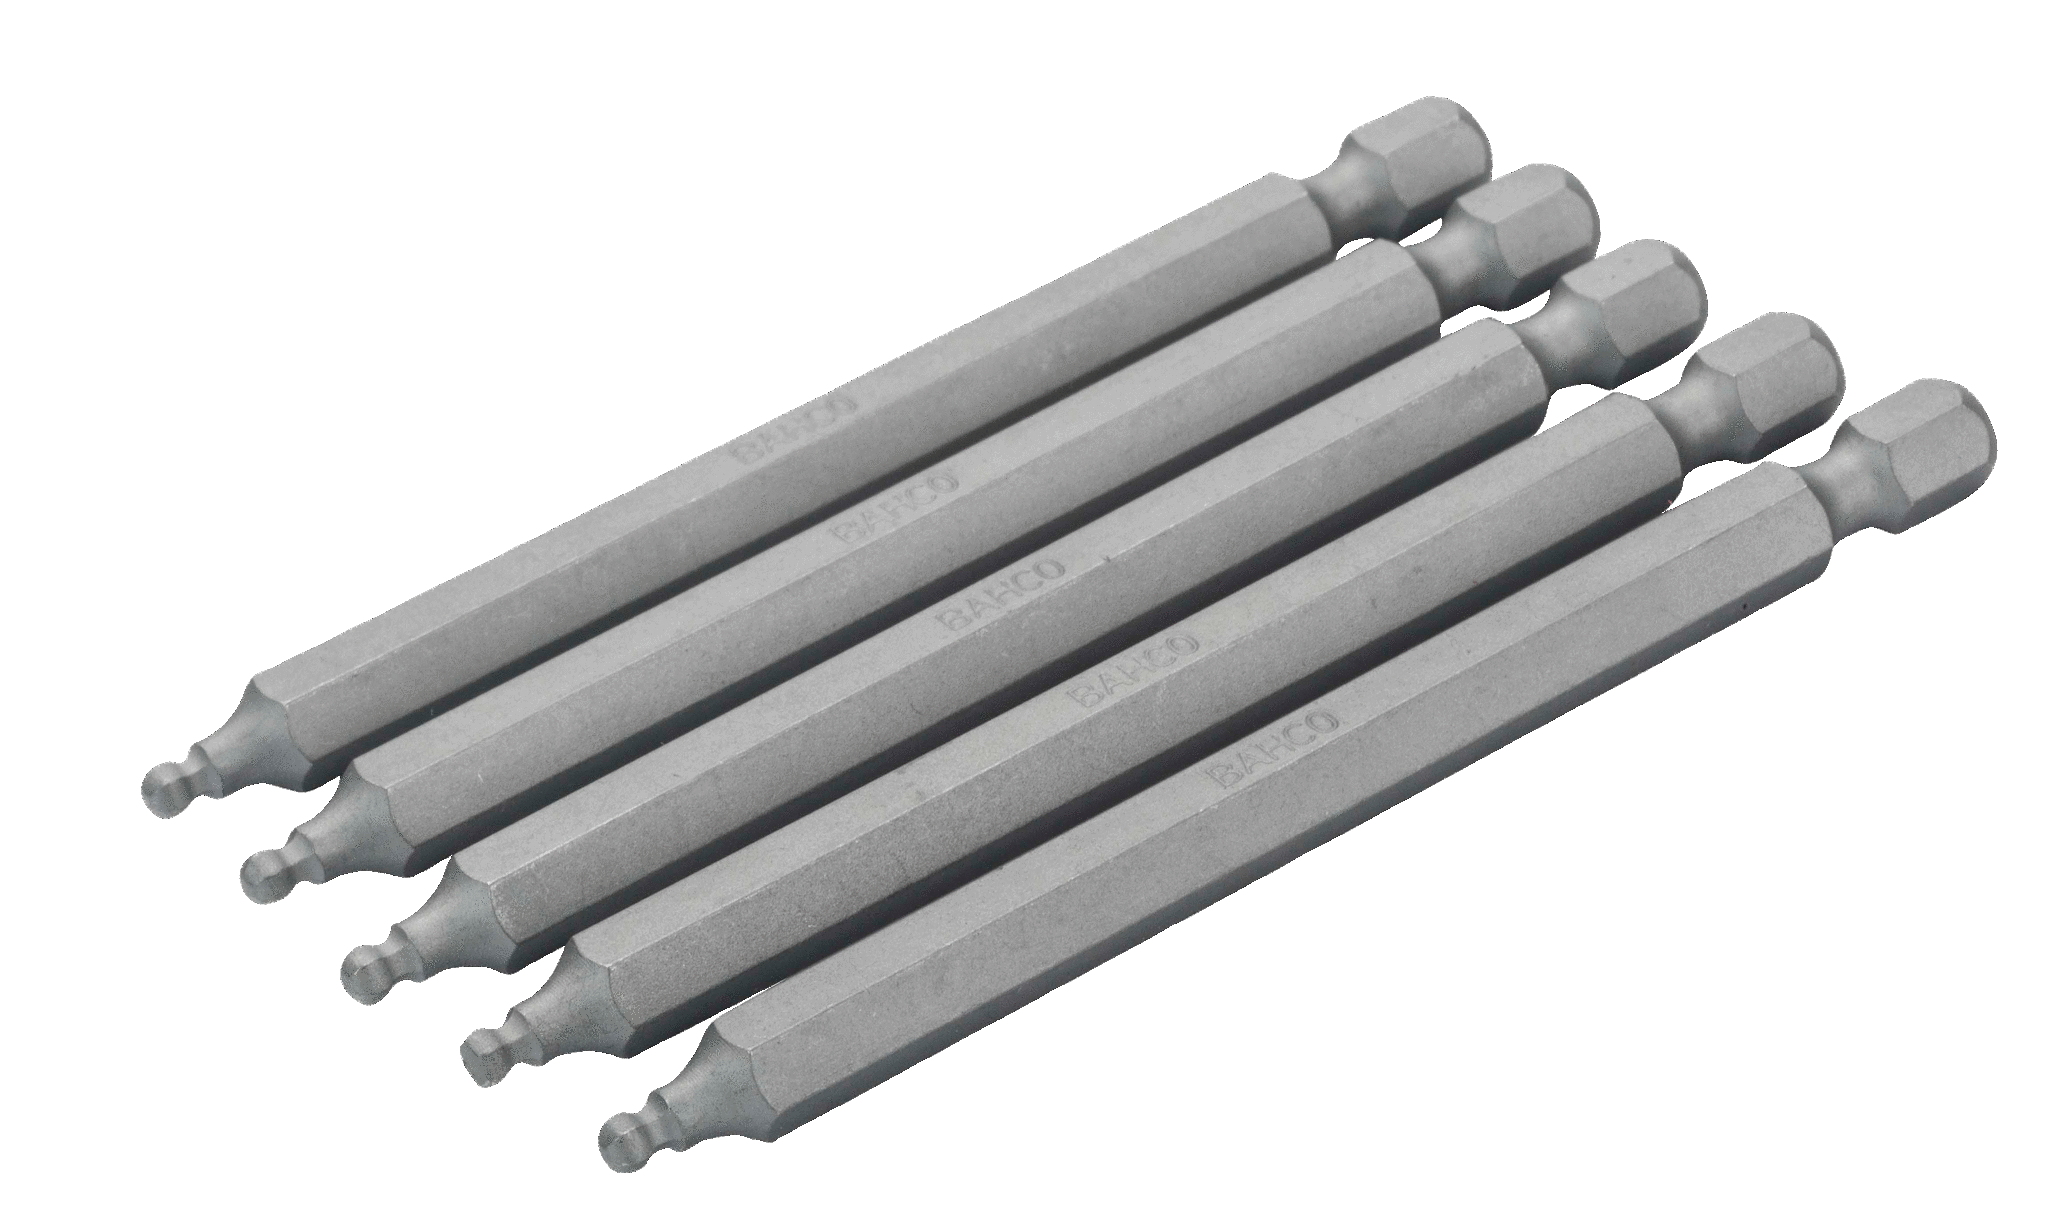 Шестигранные биты с шаровым наконечником для стандартных отверток, метрические размеры, 89 мм BAHCO 59S/H6BALL-2P